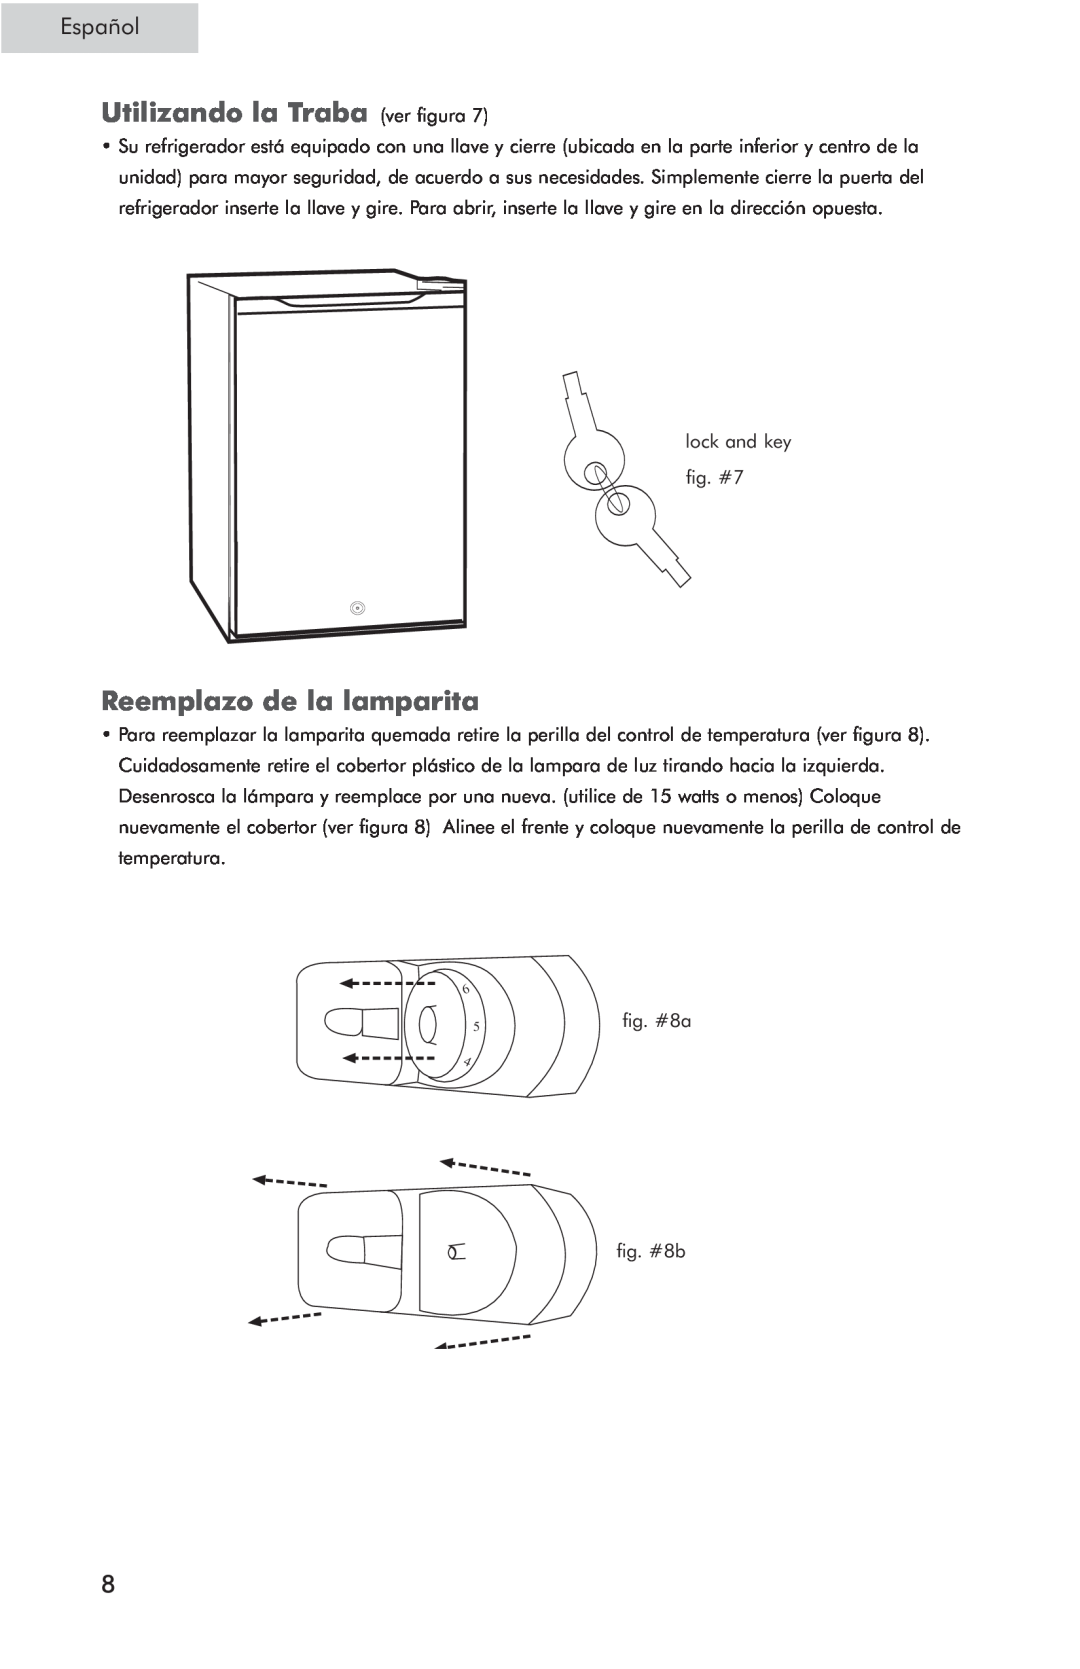 Haier HSP05WNC user manual Utilizando la Traba ver figura, Reemplazo de la lamparita, Español 